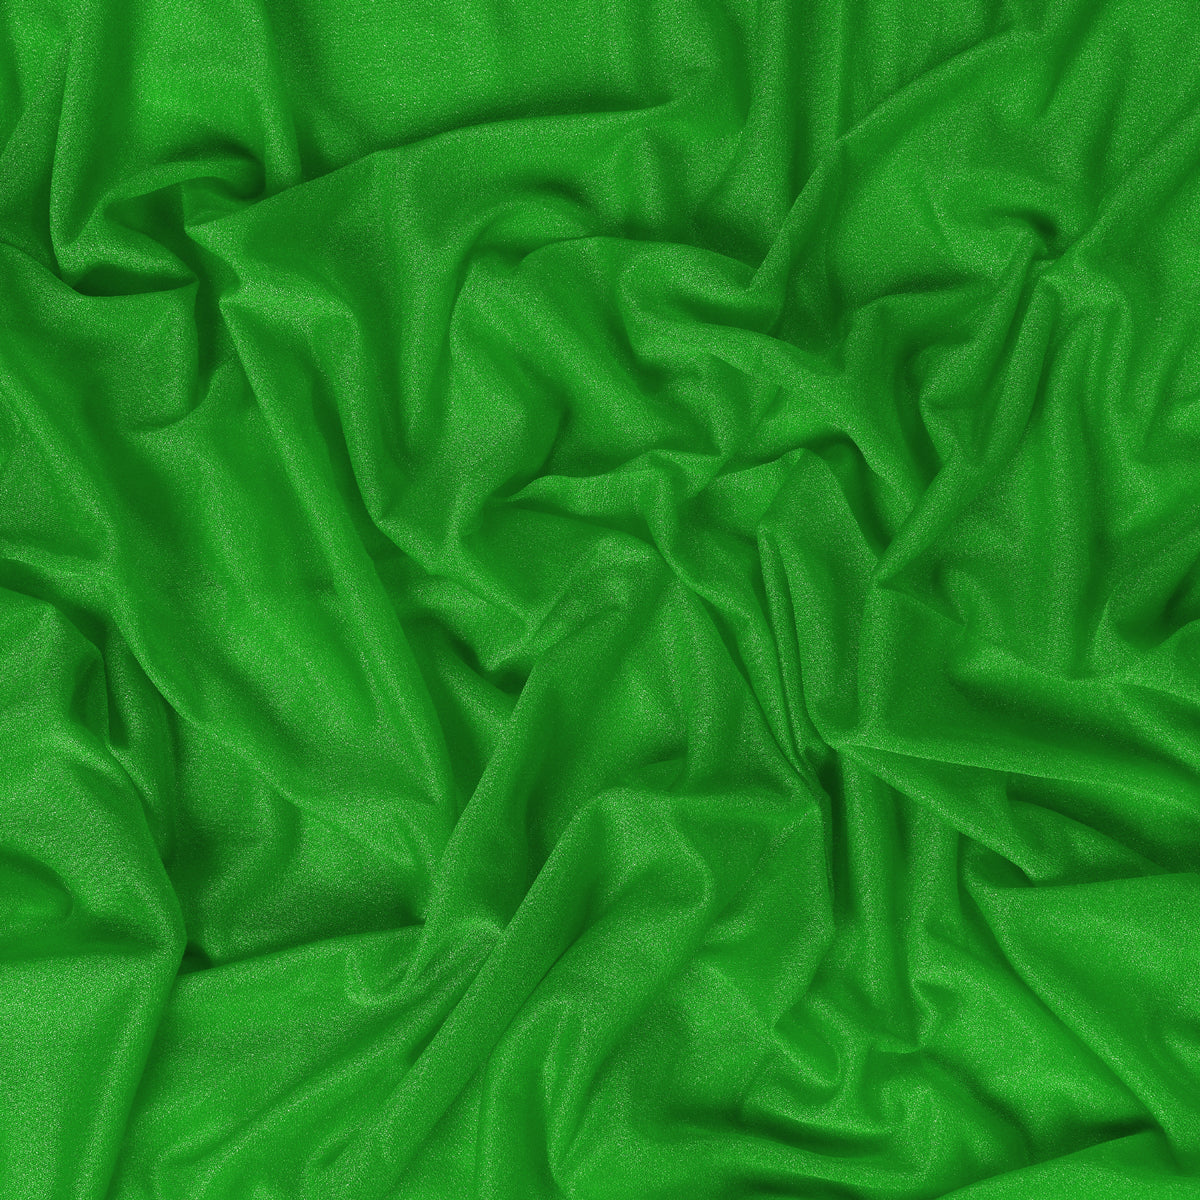 Green,a9b6d4a6-6f3f-40c1-8f8f-4c88a15b3fb7